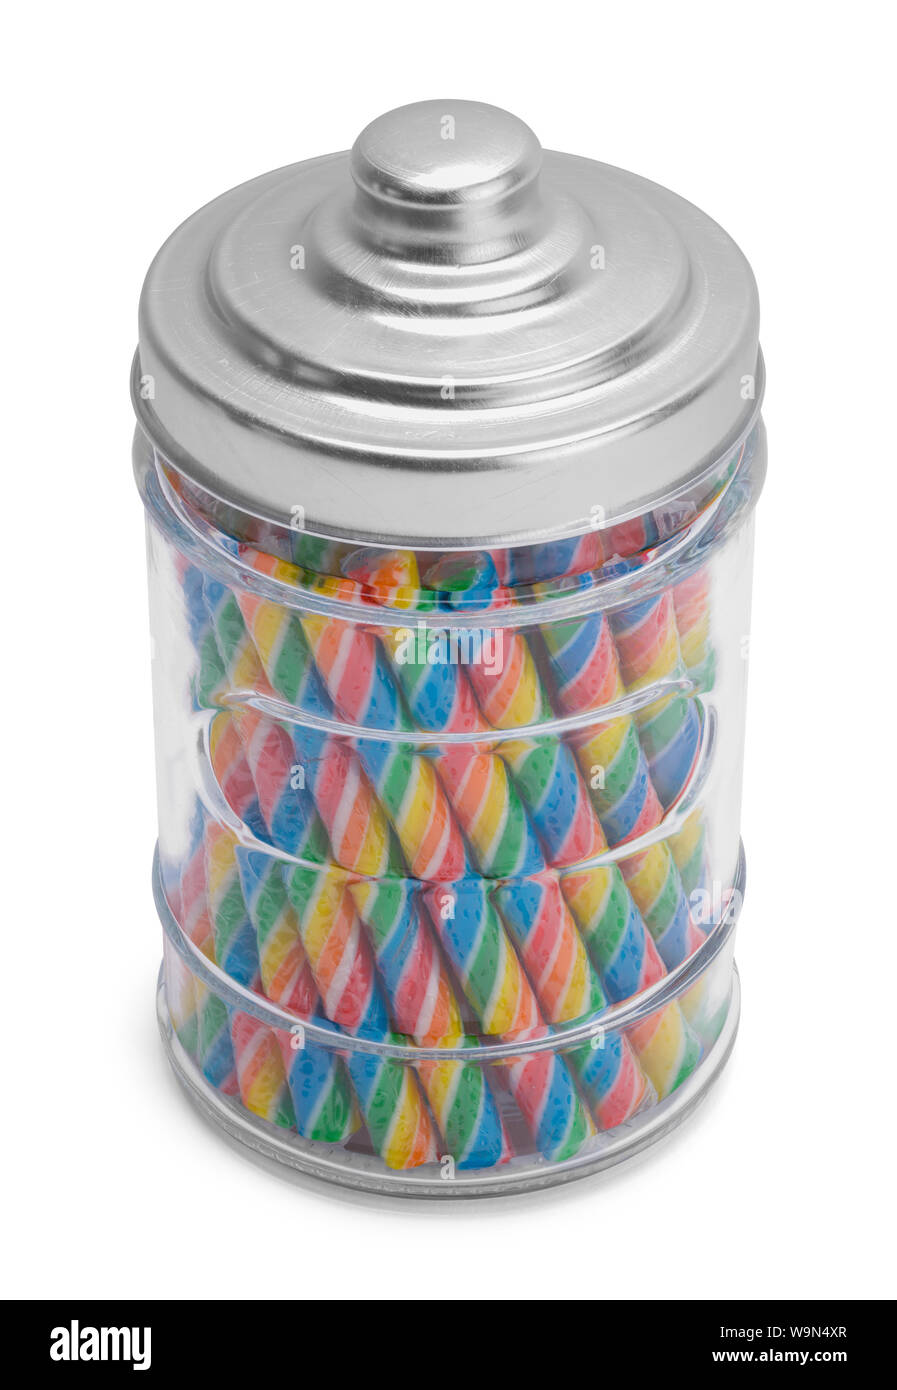 Fullk Stick Candy Jar isolé sur fond blanc. Banque D'Images